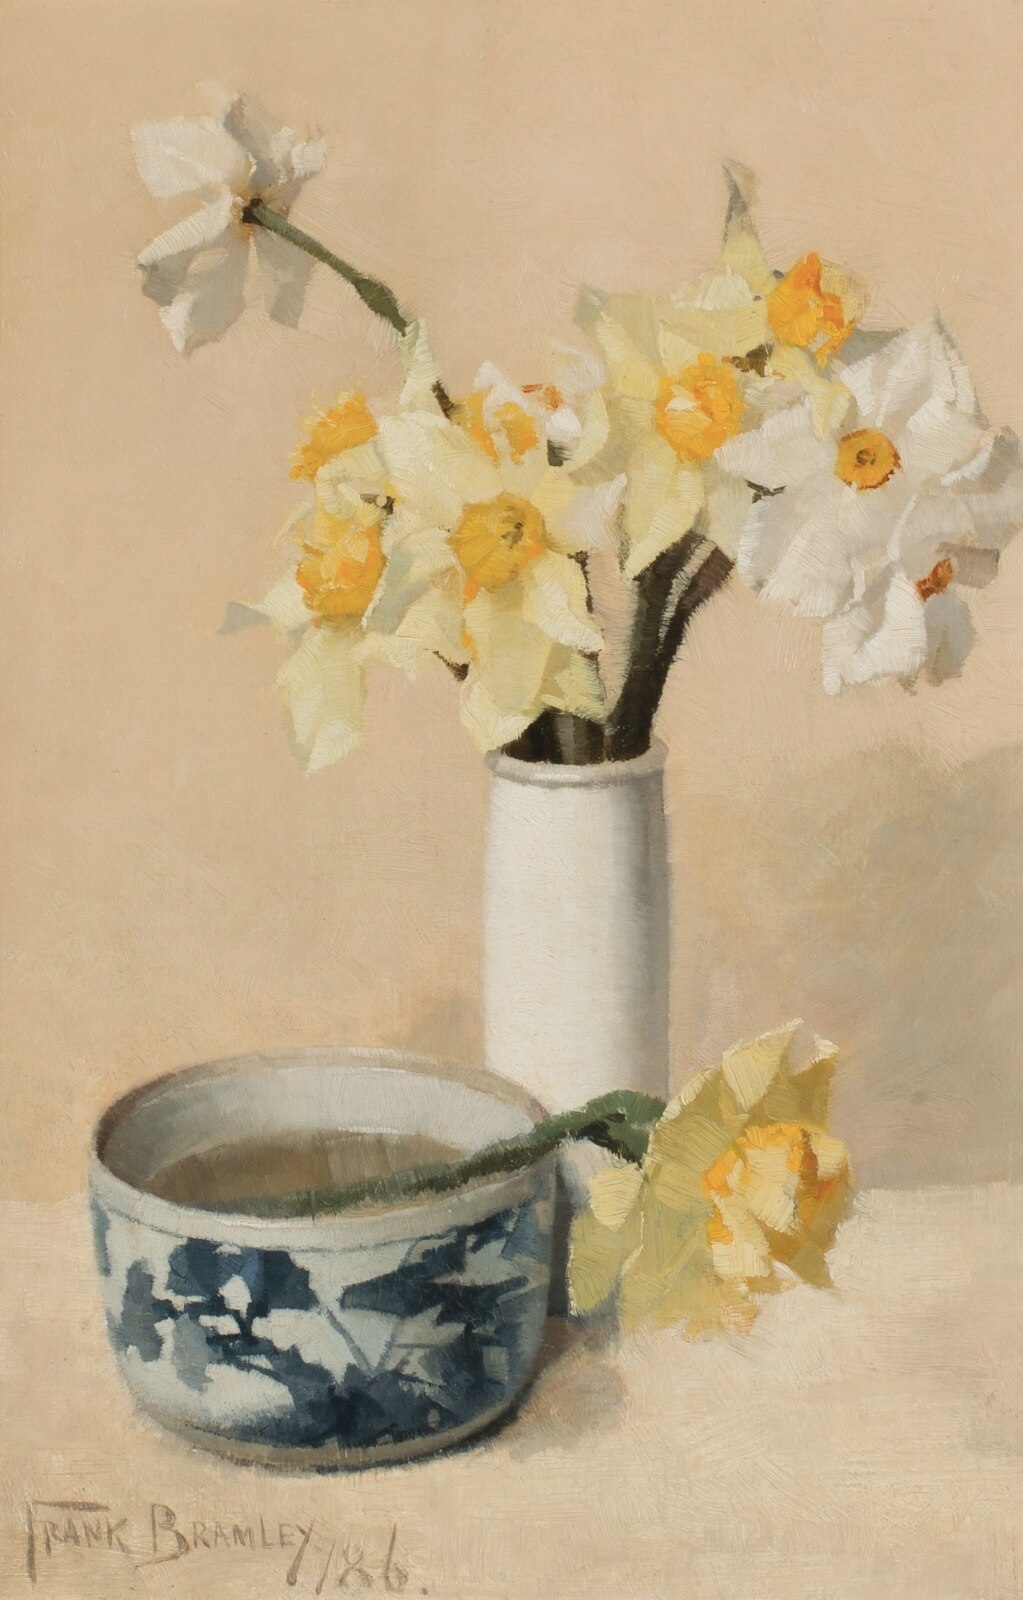 Frank Bramley - Daffodils